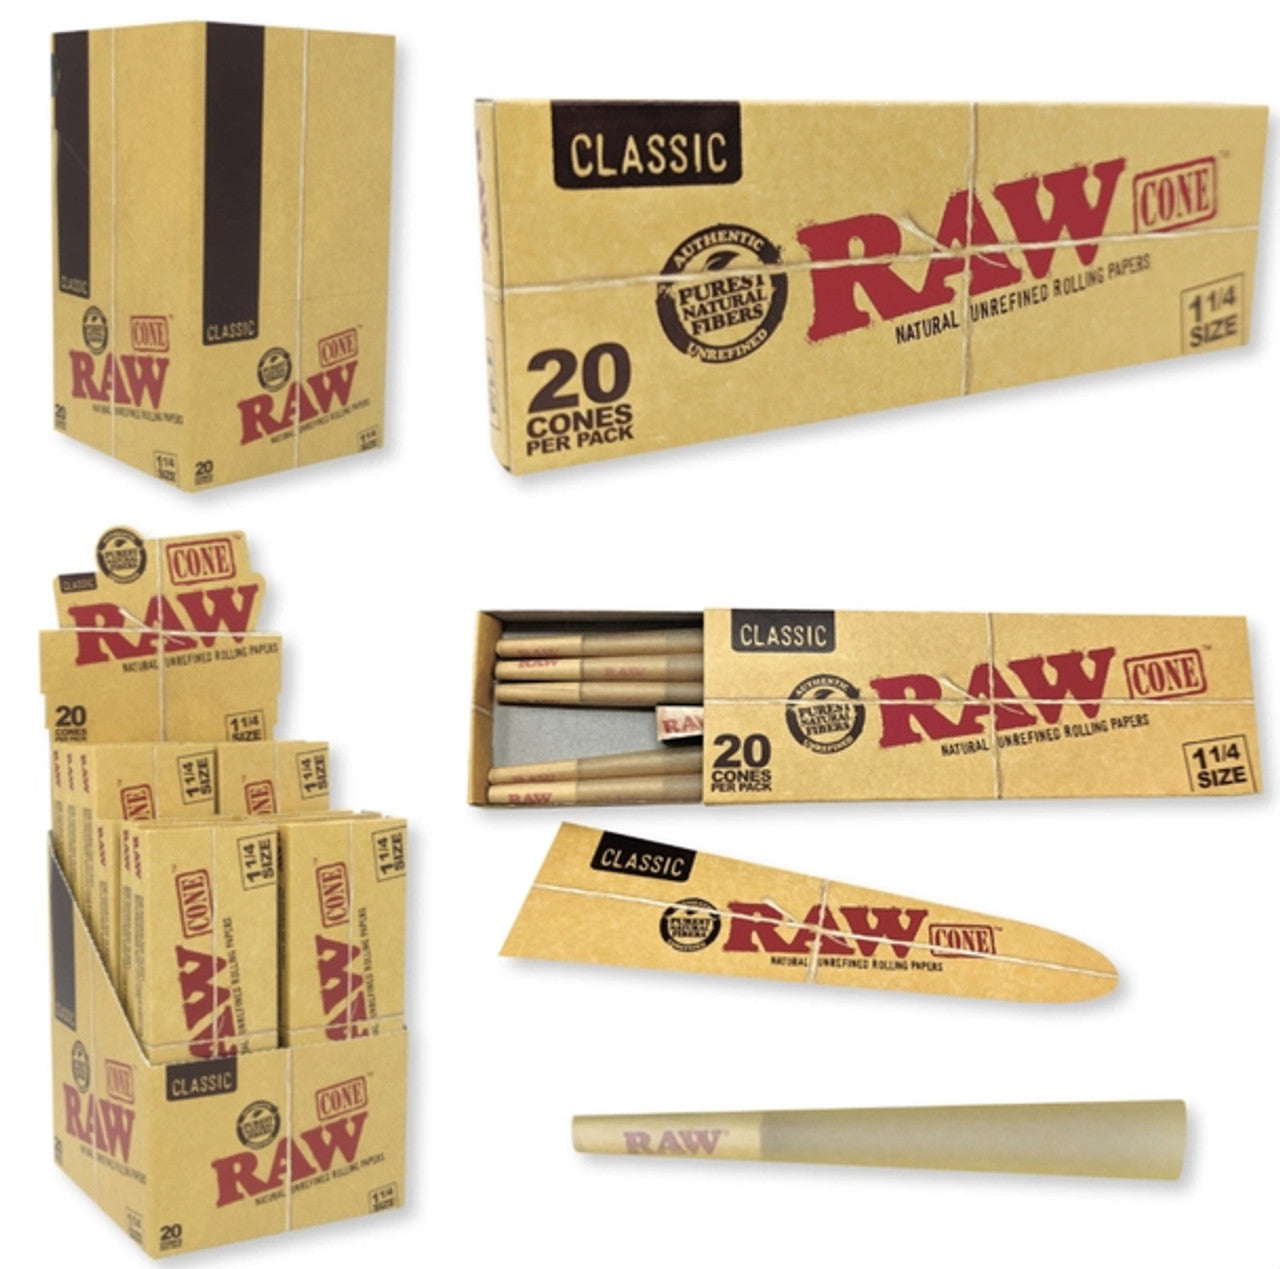 RAW-Classic CONE 1 1/4 20PK